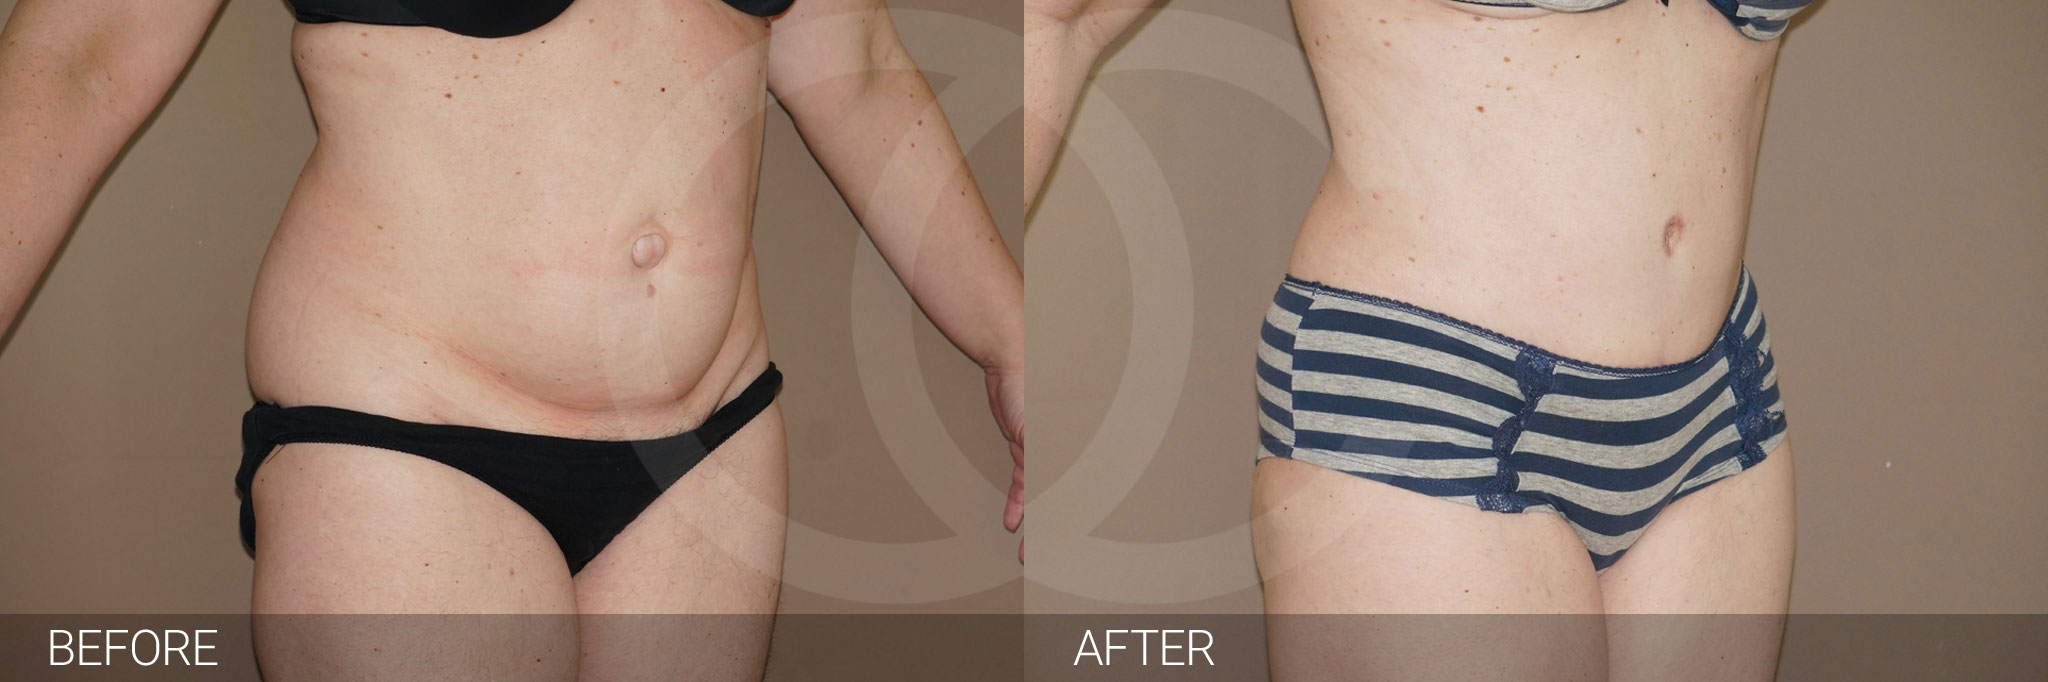 Antes y después Fotos de contorno abdominal fotos reales de pacientes 7.2 | Ocean Clinic Marbella Madrid